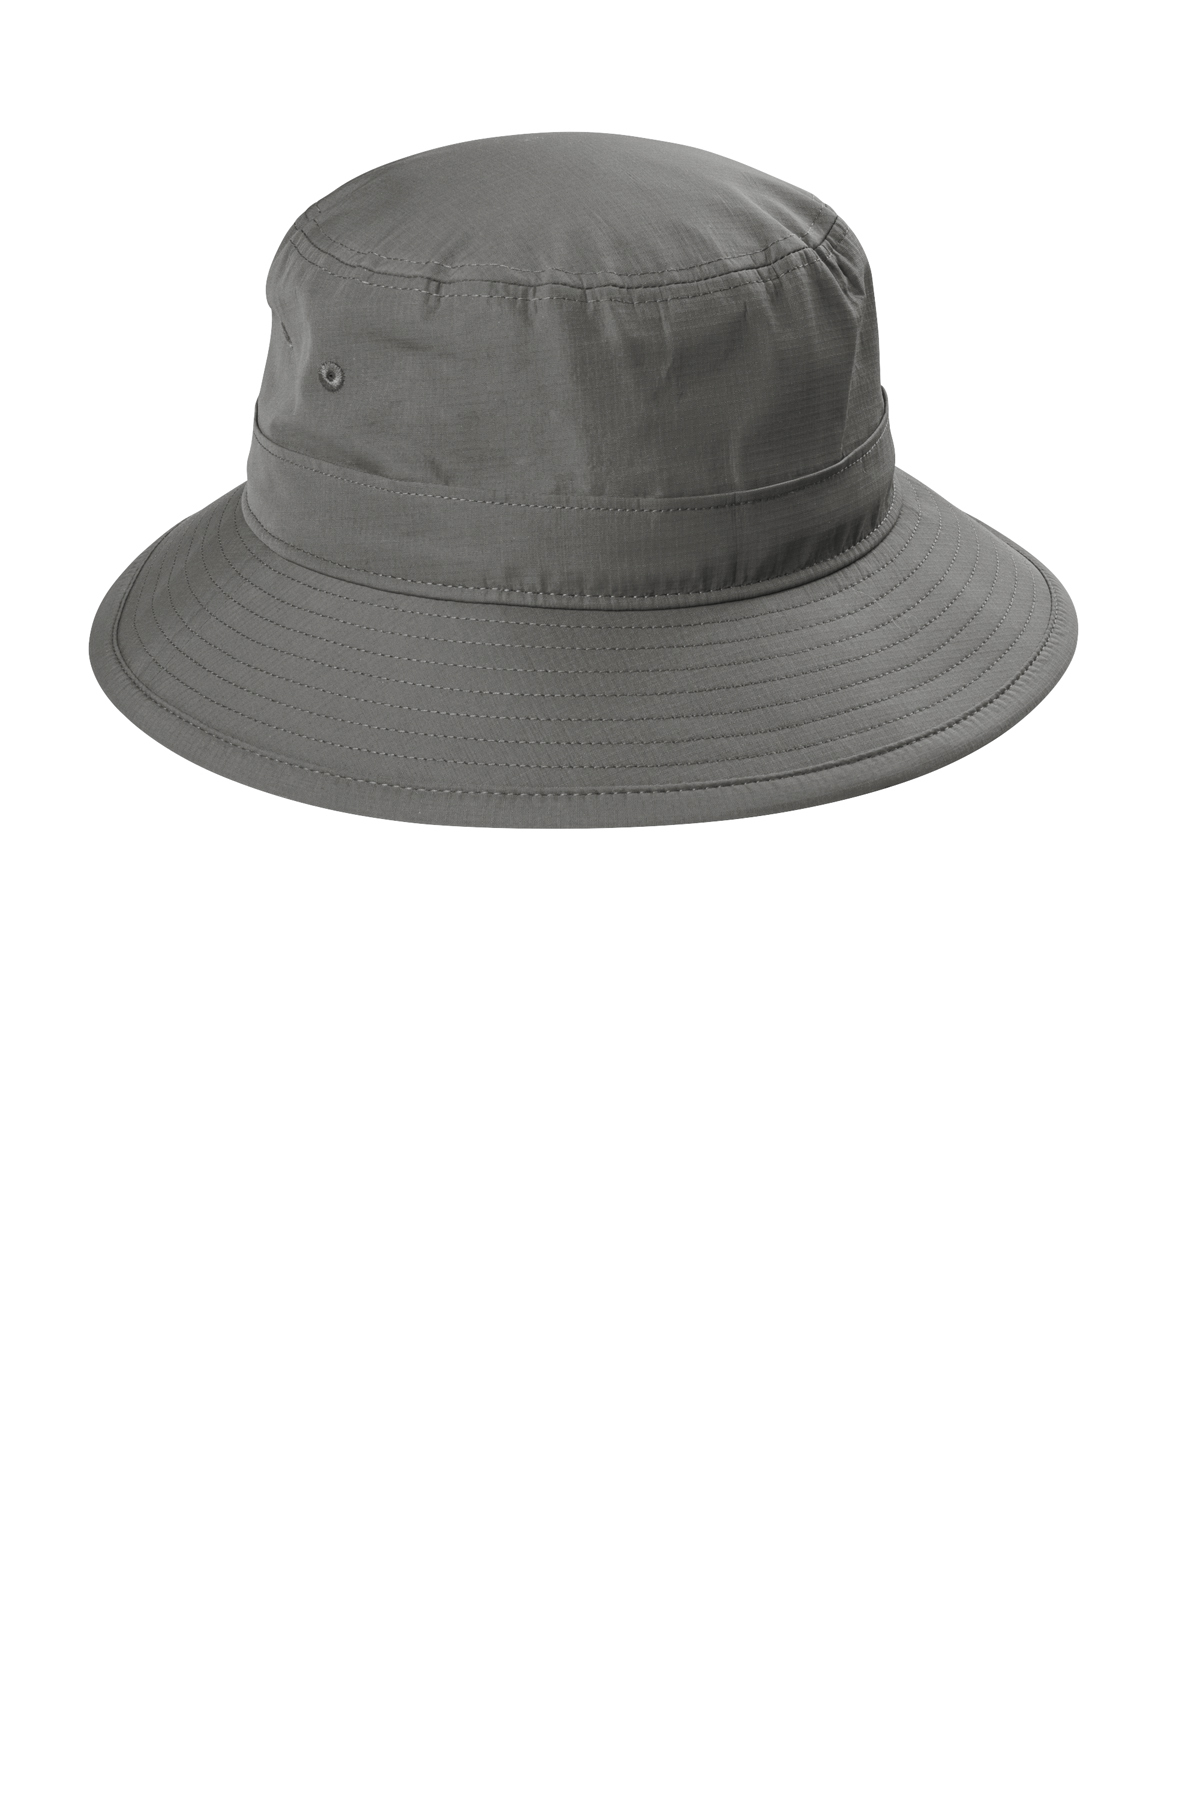 SanMar | Hat UV Authority Outdoor Bucket | Product Port